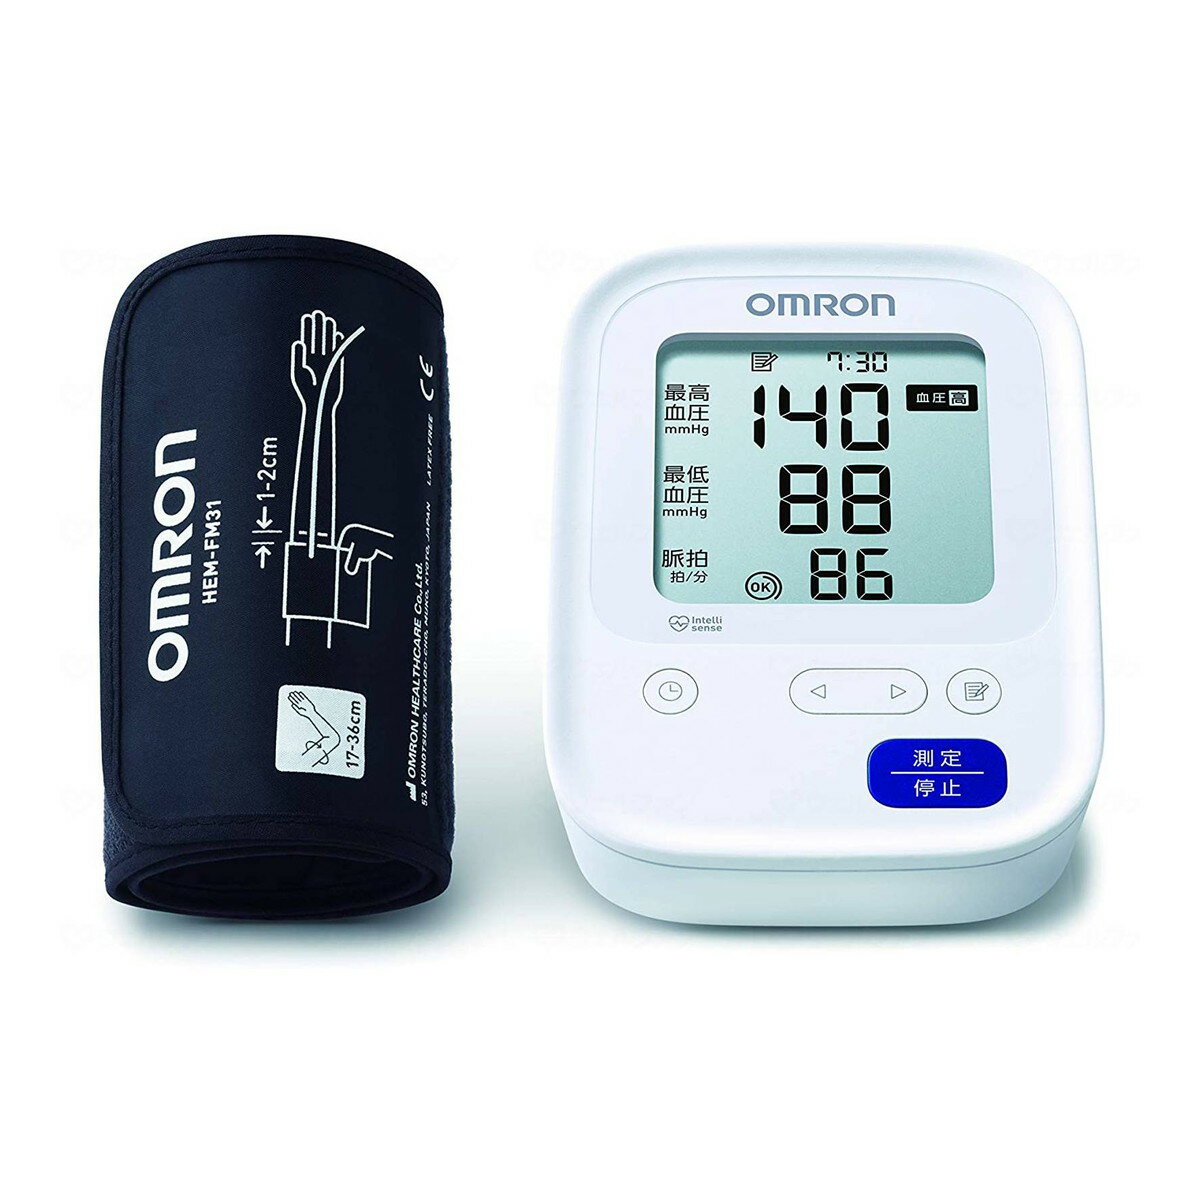 オムロン 上腕式血圧計 HCR-7106 管理医療機器